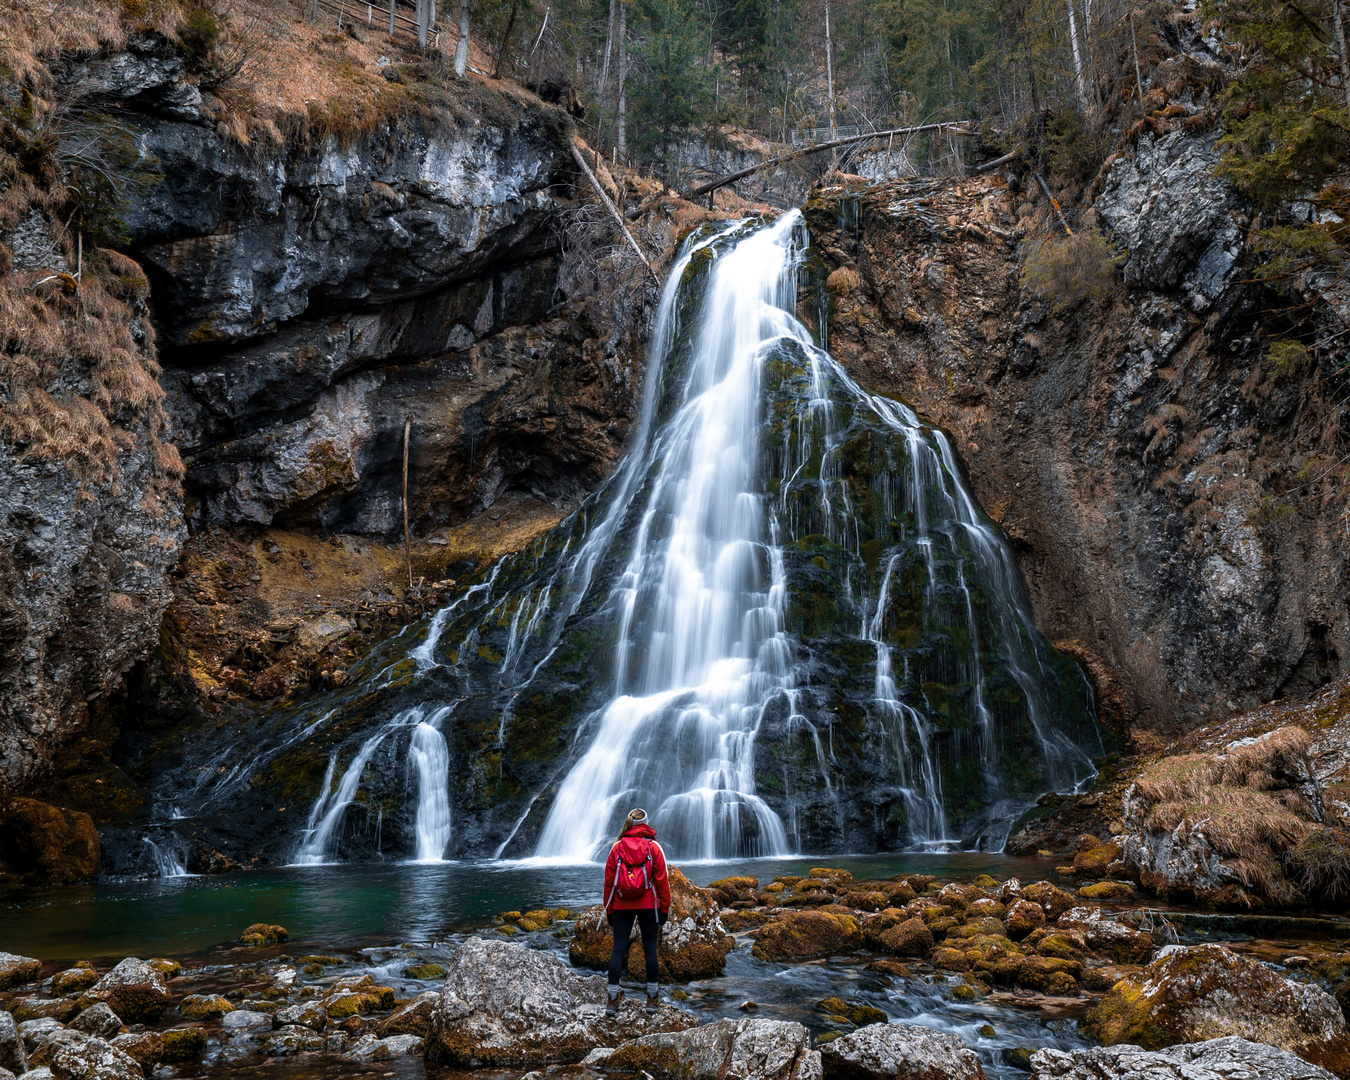 Gollinger Wasserfall, Österreich